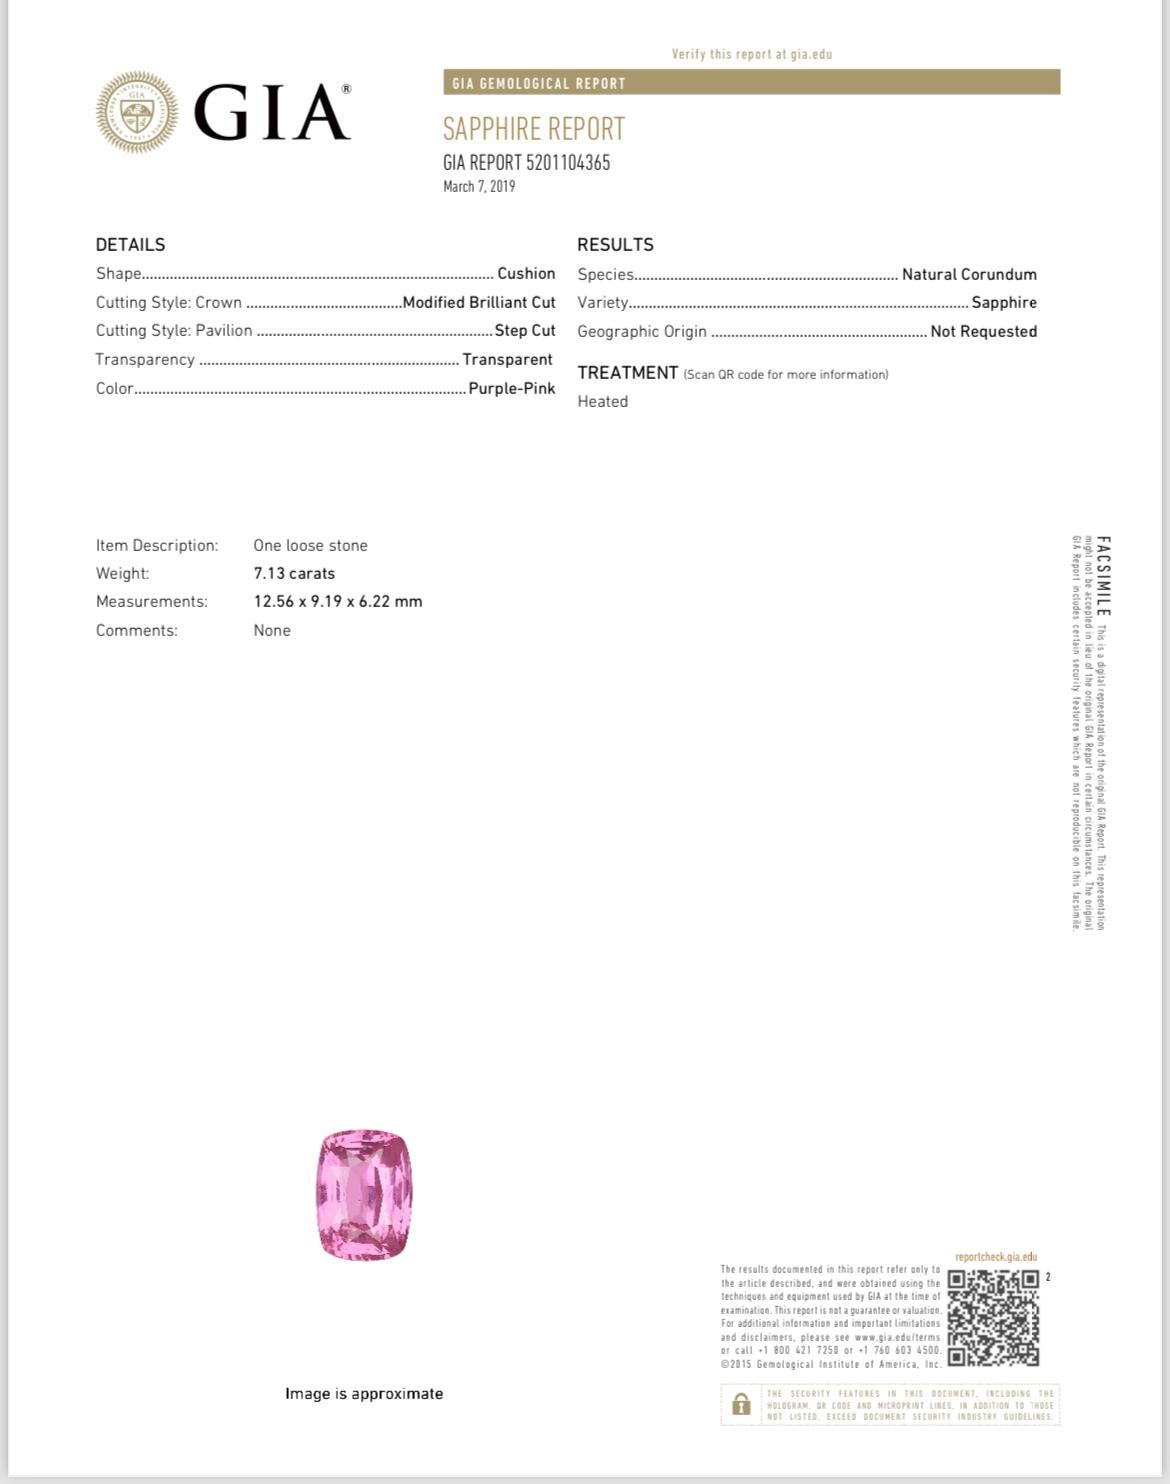 Ein 7,13 Karat schwerer, intensiver rosa Saphir wird von zwei Diamanten im Epaulettenschliff von insgesamt 0,48 Karat veredelt, die in Platin mit 18 Karat Roségold gefertigt sind. Der Saphir ist durch einen GIA-Bericht zertifiziert.

Rosafarbene